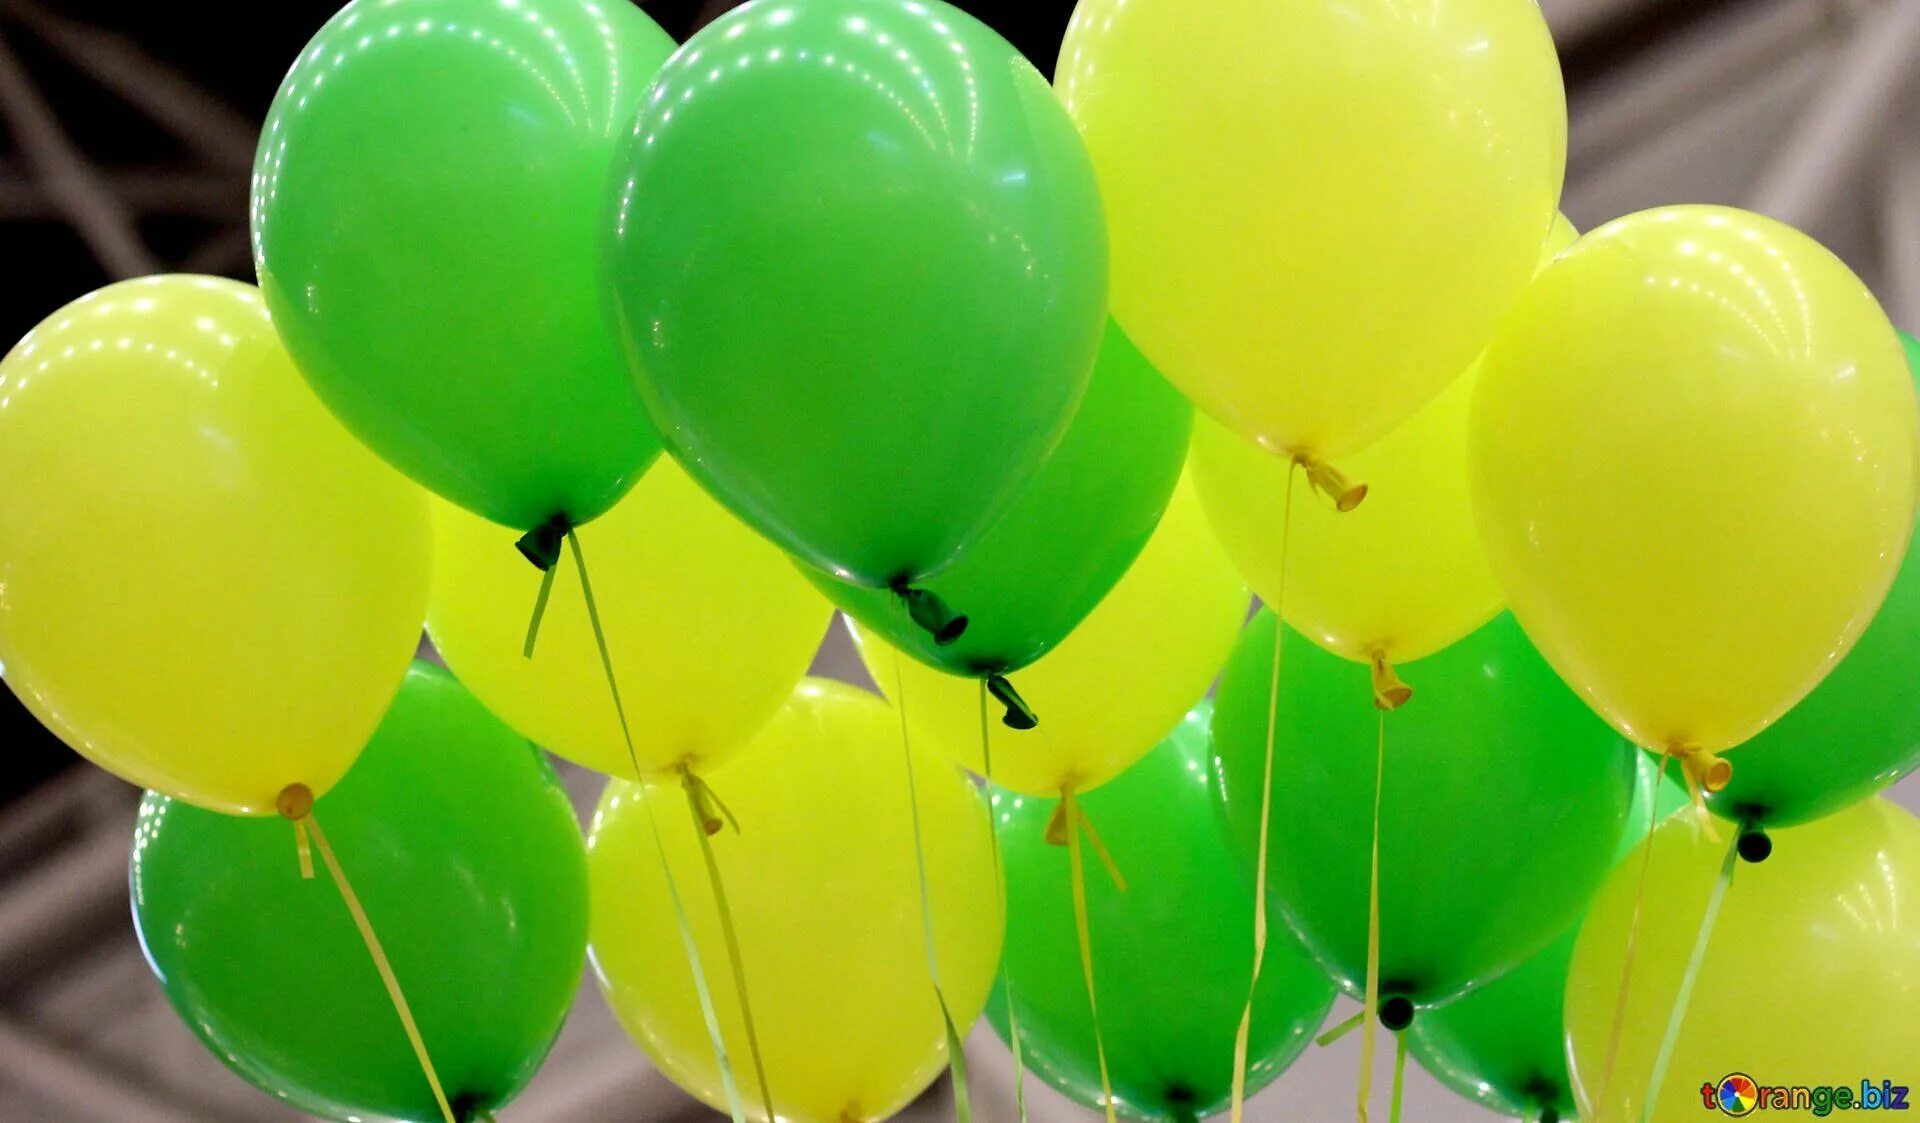 Красные и зеленый шары. Зеленый шарик. Салатовые шары. Желто зеленые шары. Зеленый воздушный шарик.